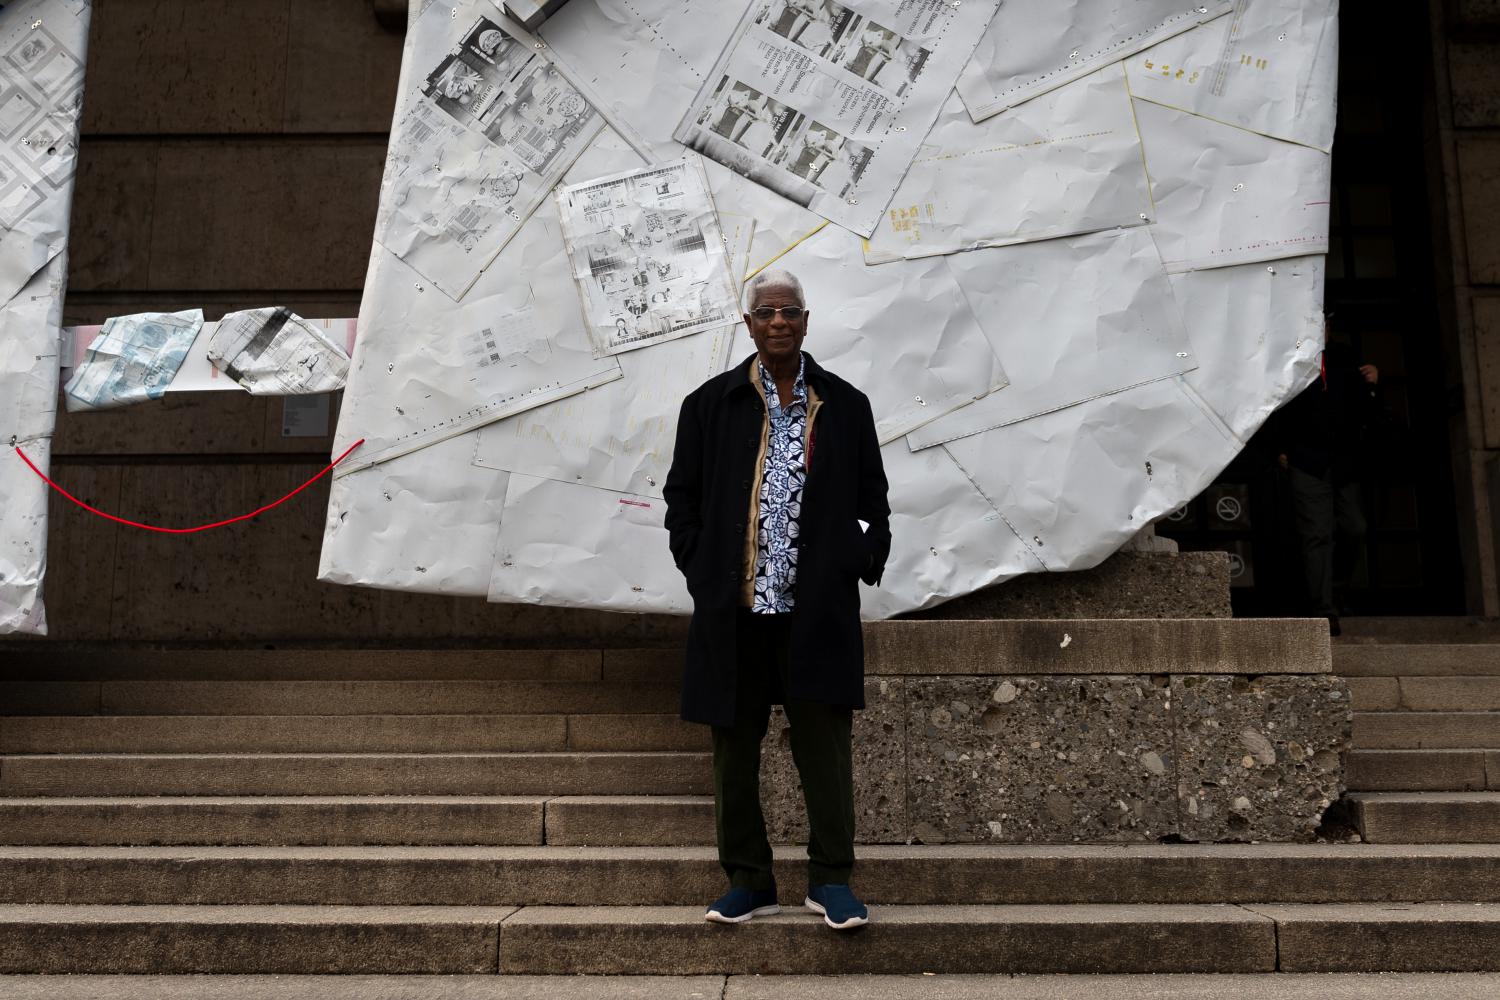 El Anatsui vor seiner großen Installation 2019 an der Fassade vom Haus der Kunst. Der ghanaische Bildhauer hat in diesem Jahr den größten Zuwachs an Suchinteresse bei Google gehabt